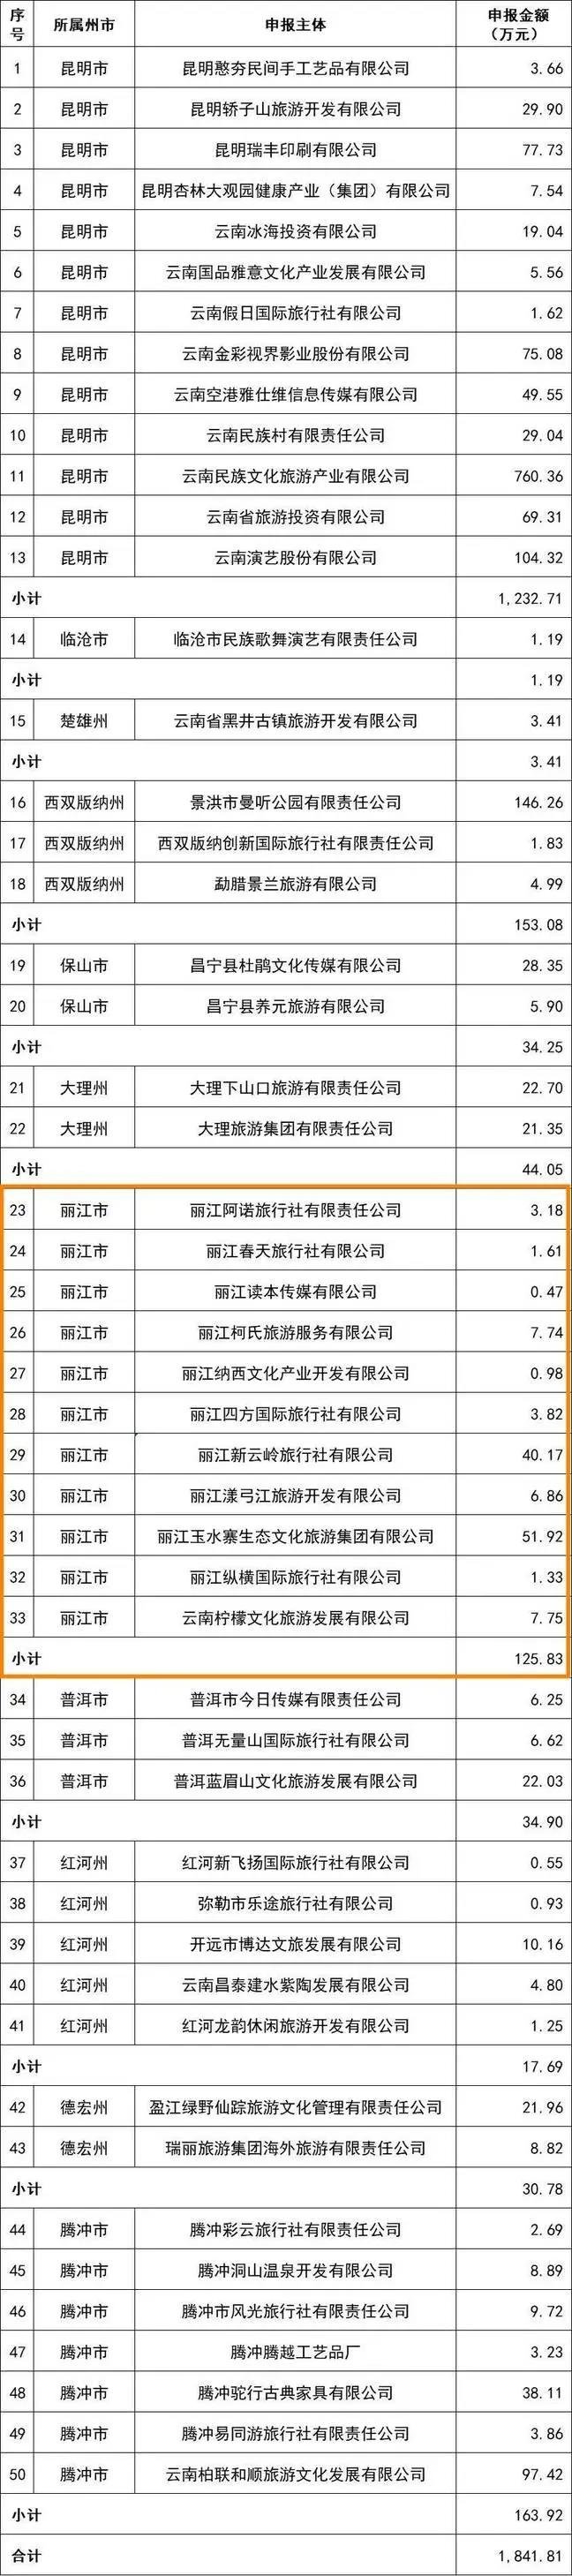 丽江11家企业和11个景区拟获省第二批疫情补助资金奖补